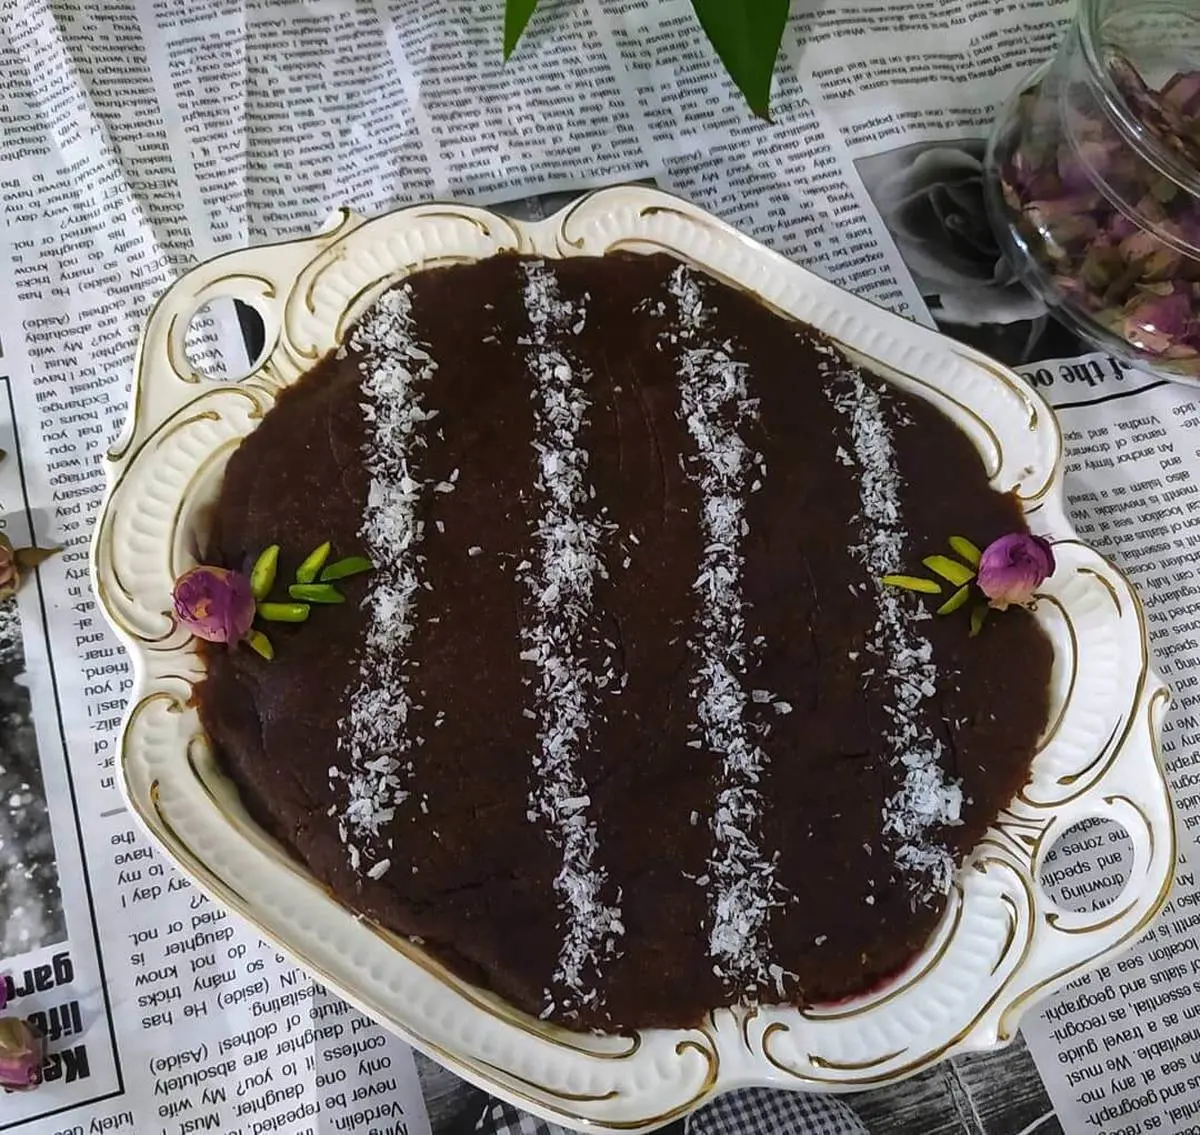 طرز تهیه حلوا سیاه دانه با ارده مقوی و خوش طعم به روش شیرازی 